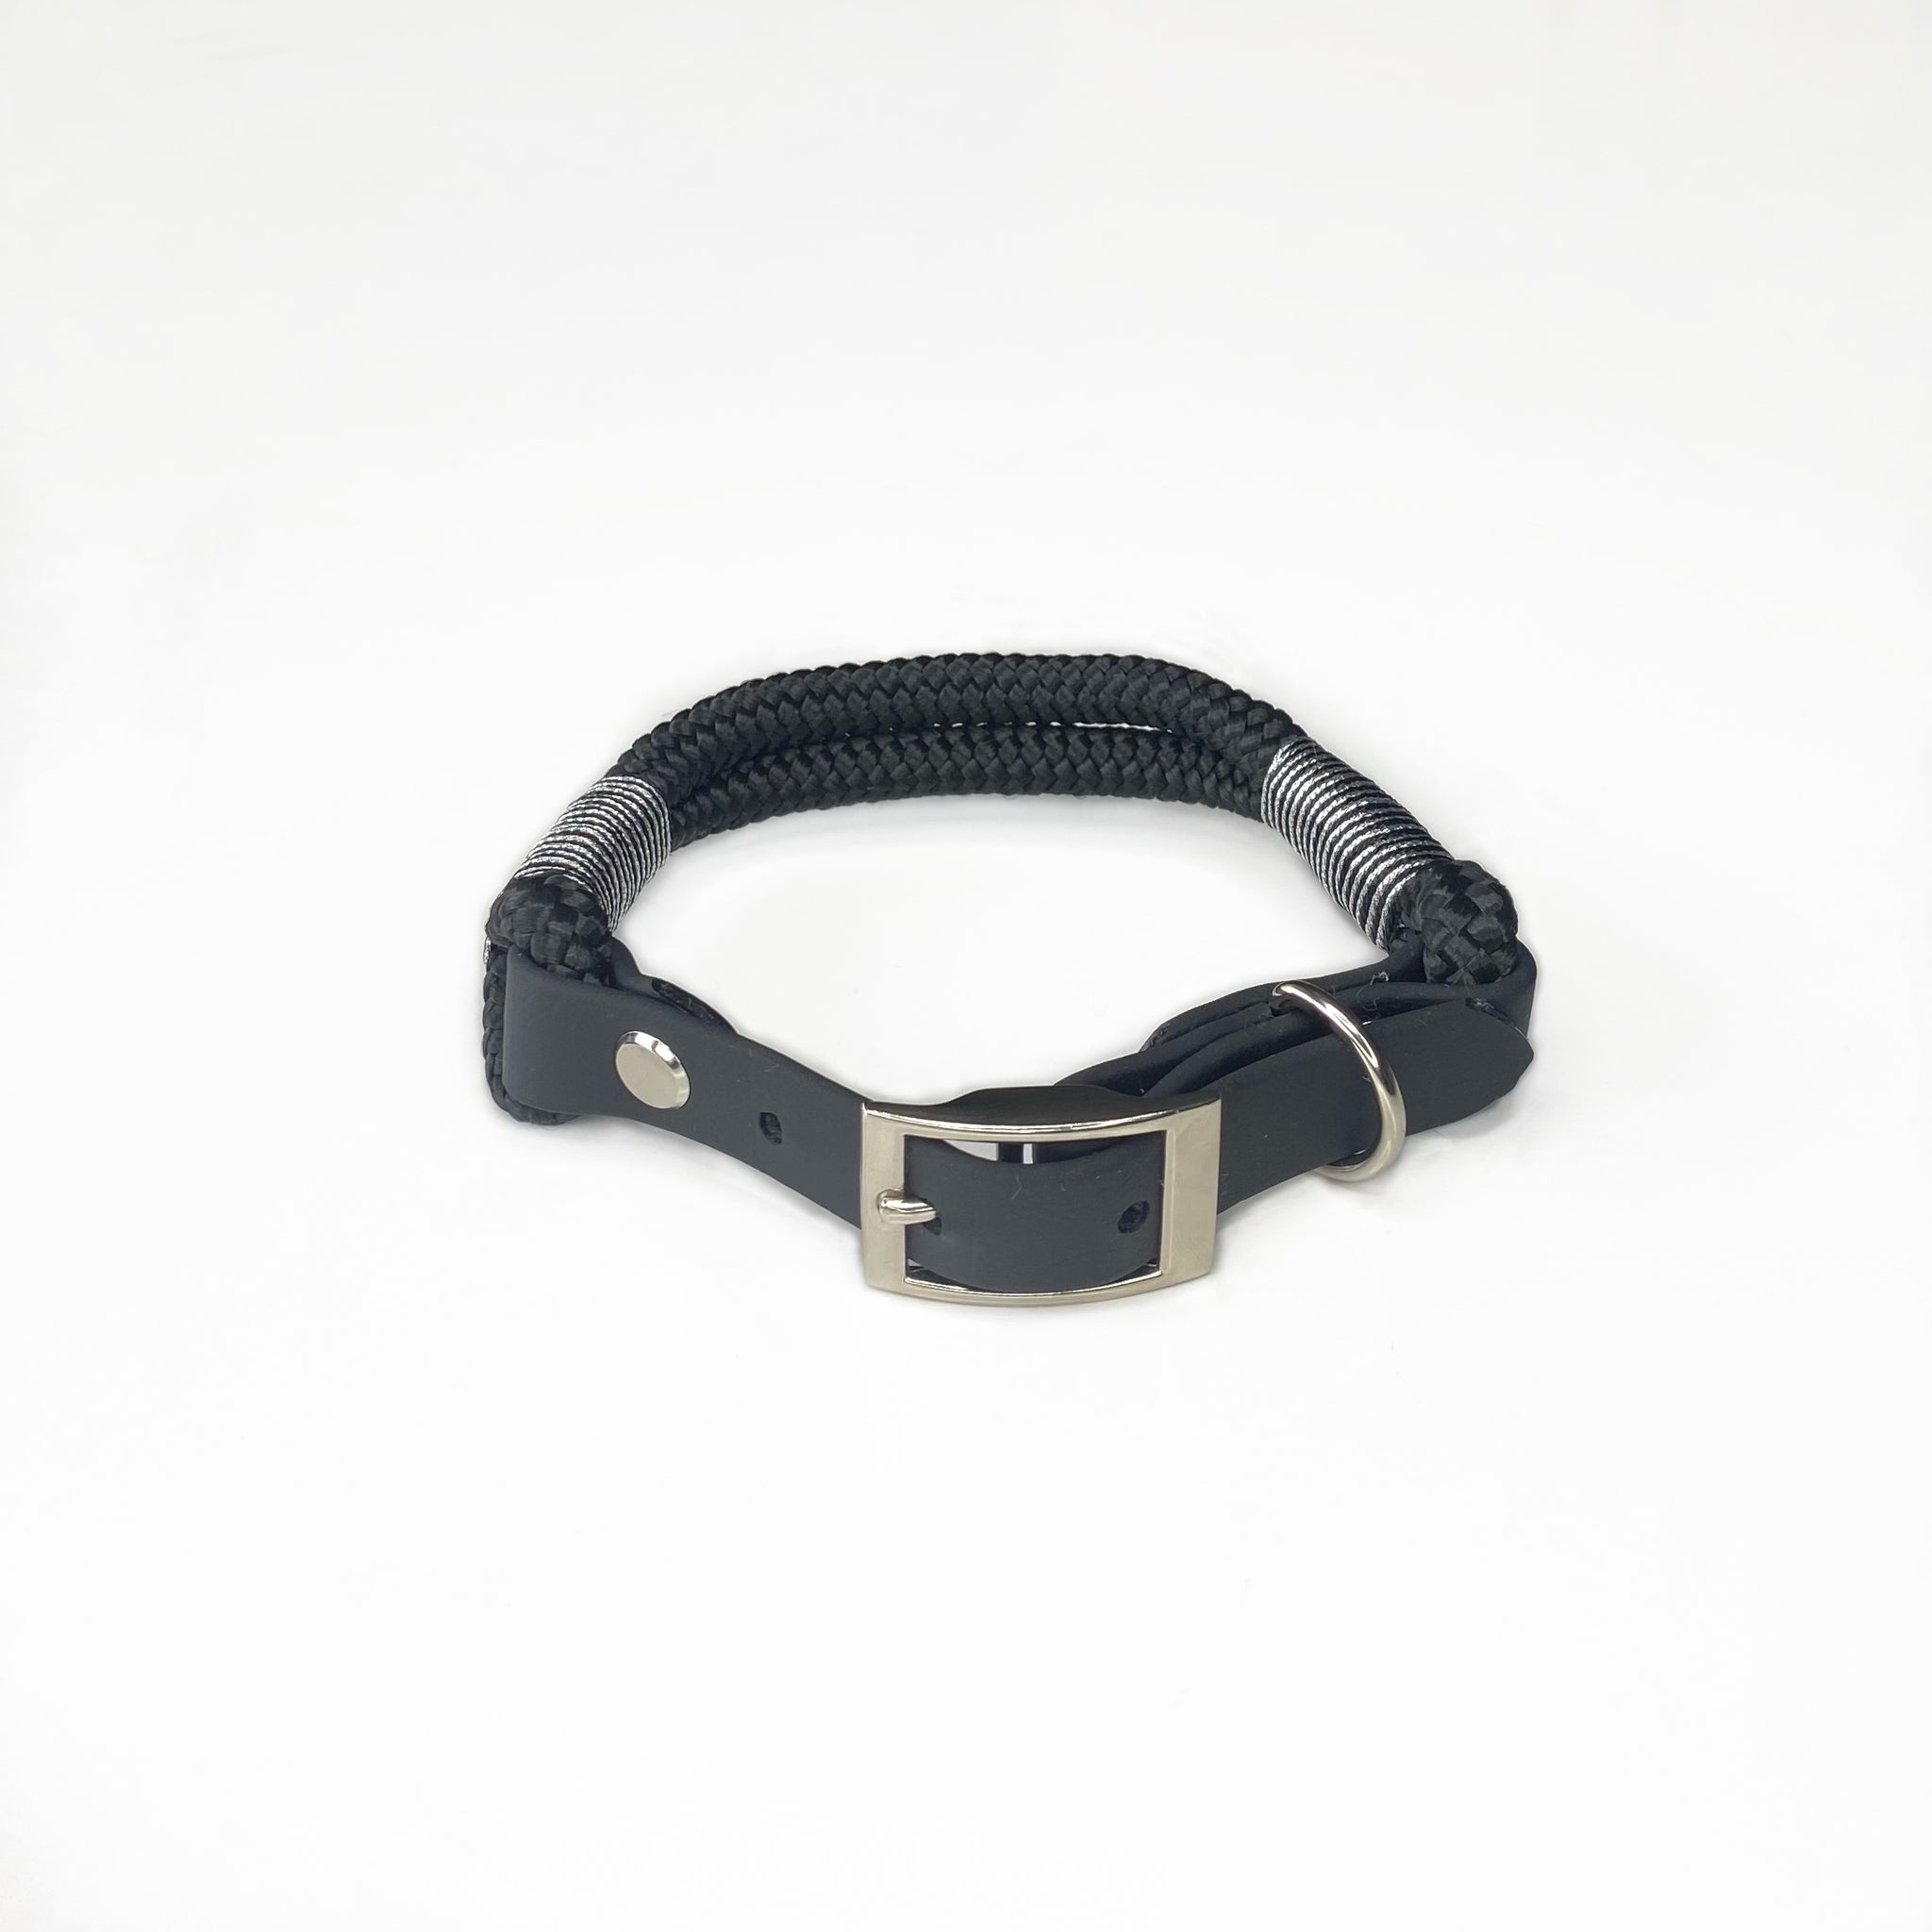 Hundehalsbånd i sort reb med sort vegansk læder og sølv detaljer. Hundehalsbåndet lyser i mørket.